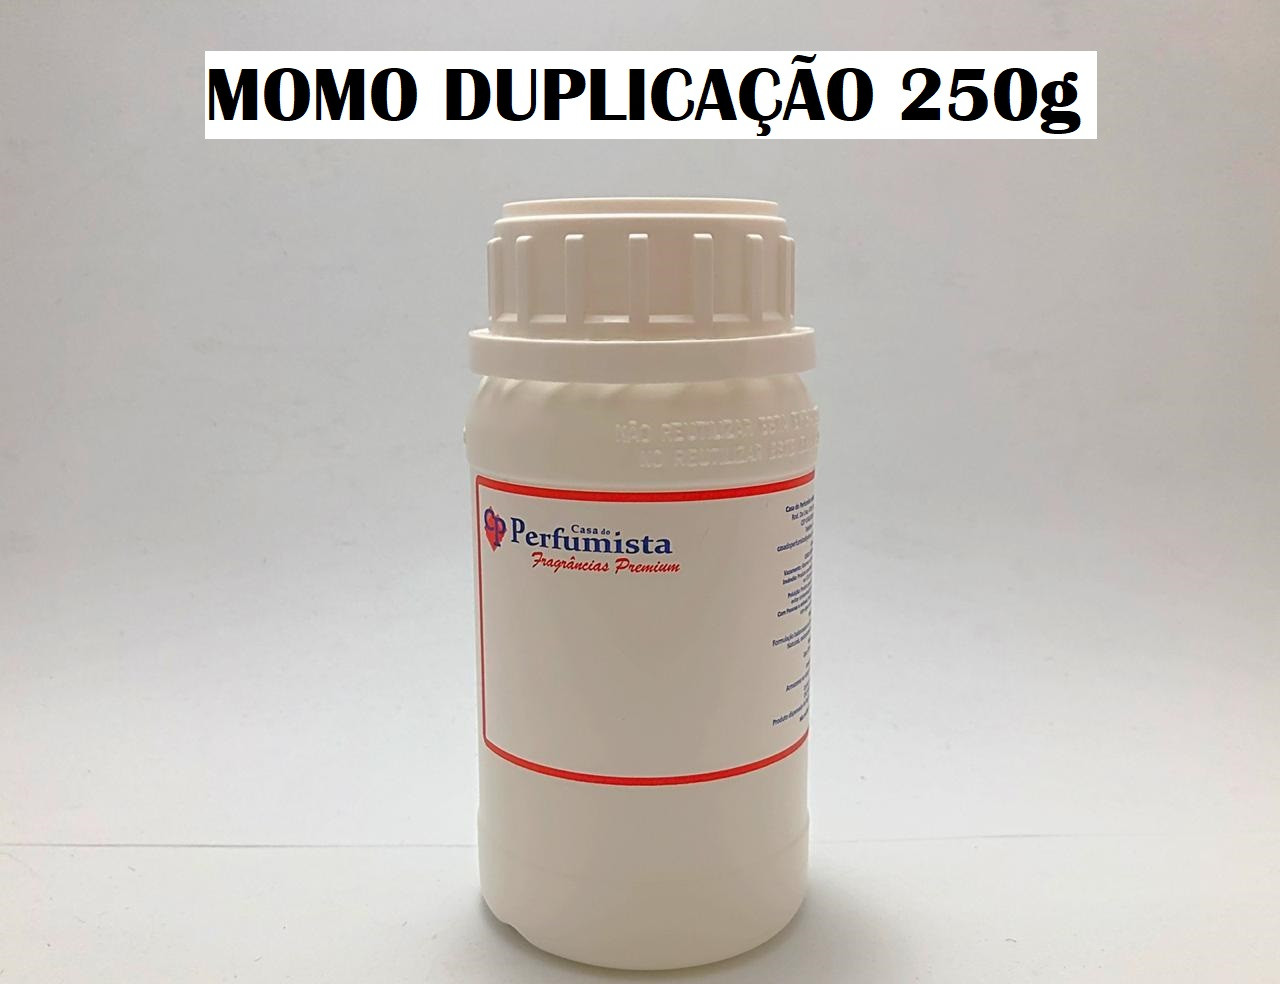 MOMO DUPLICAÇÃO - 250g